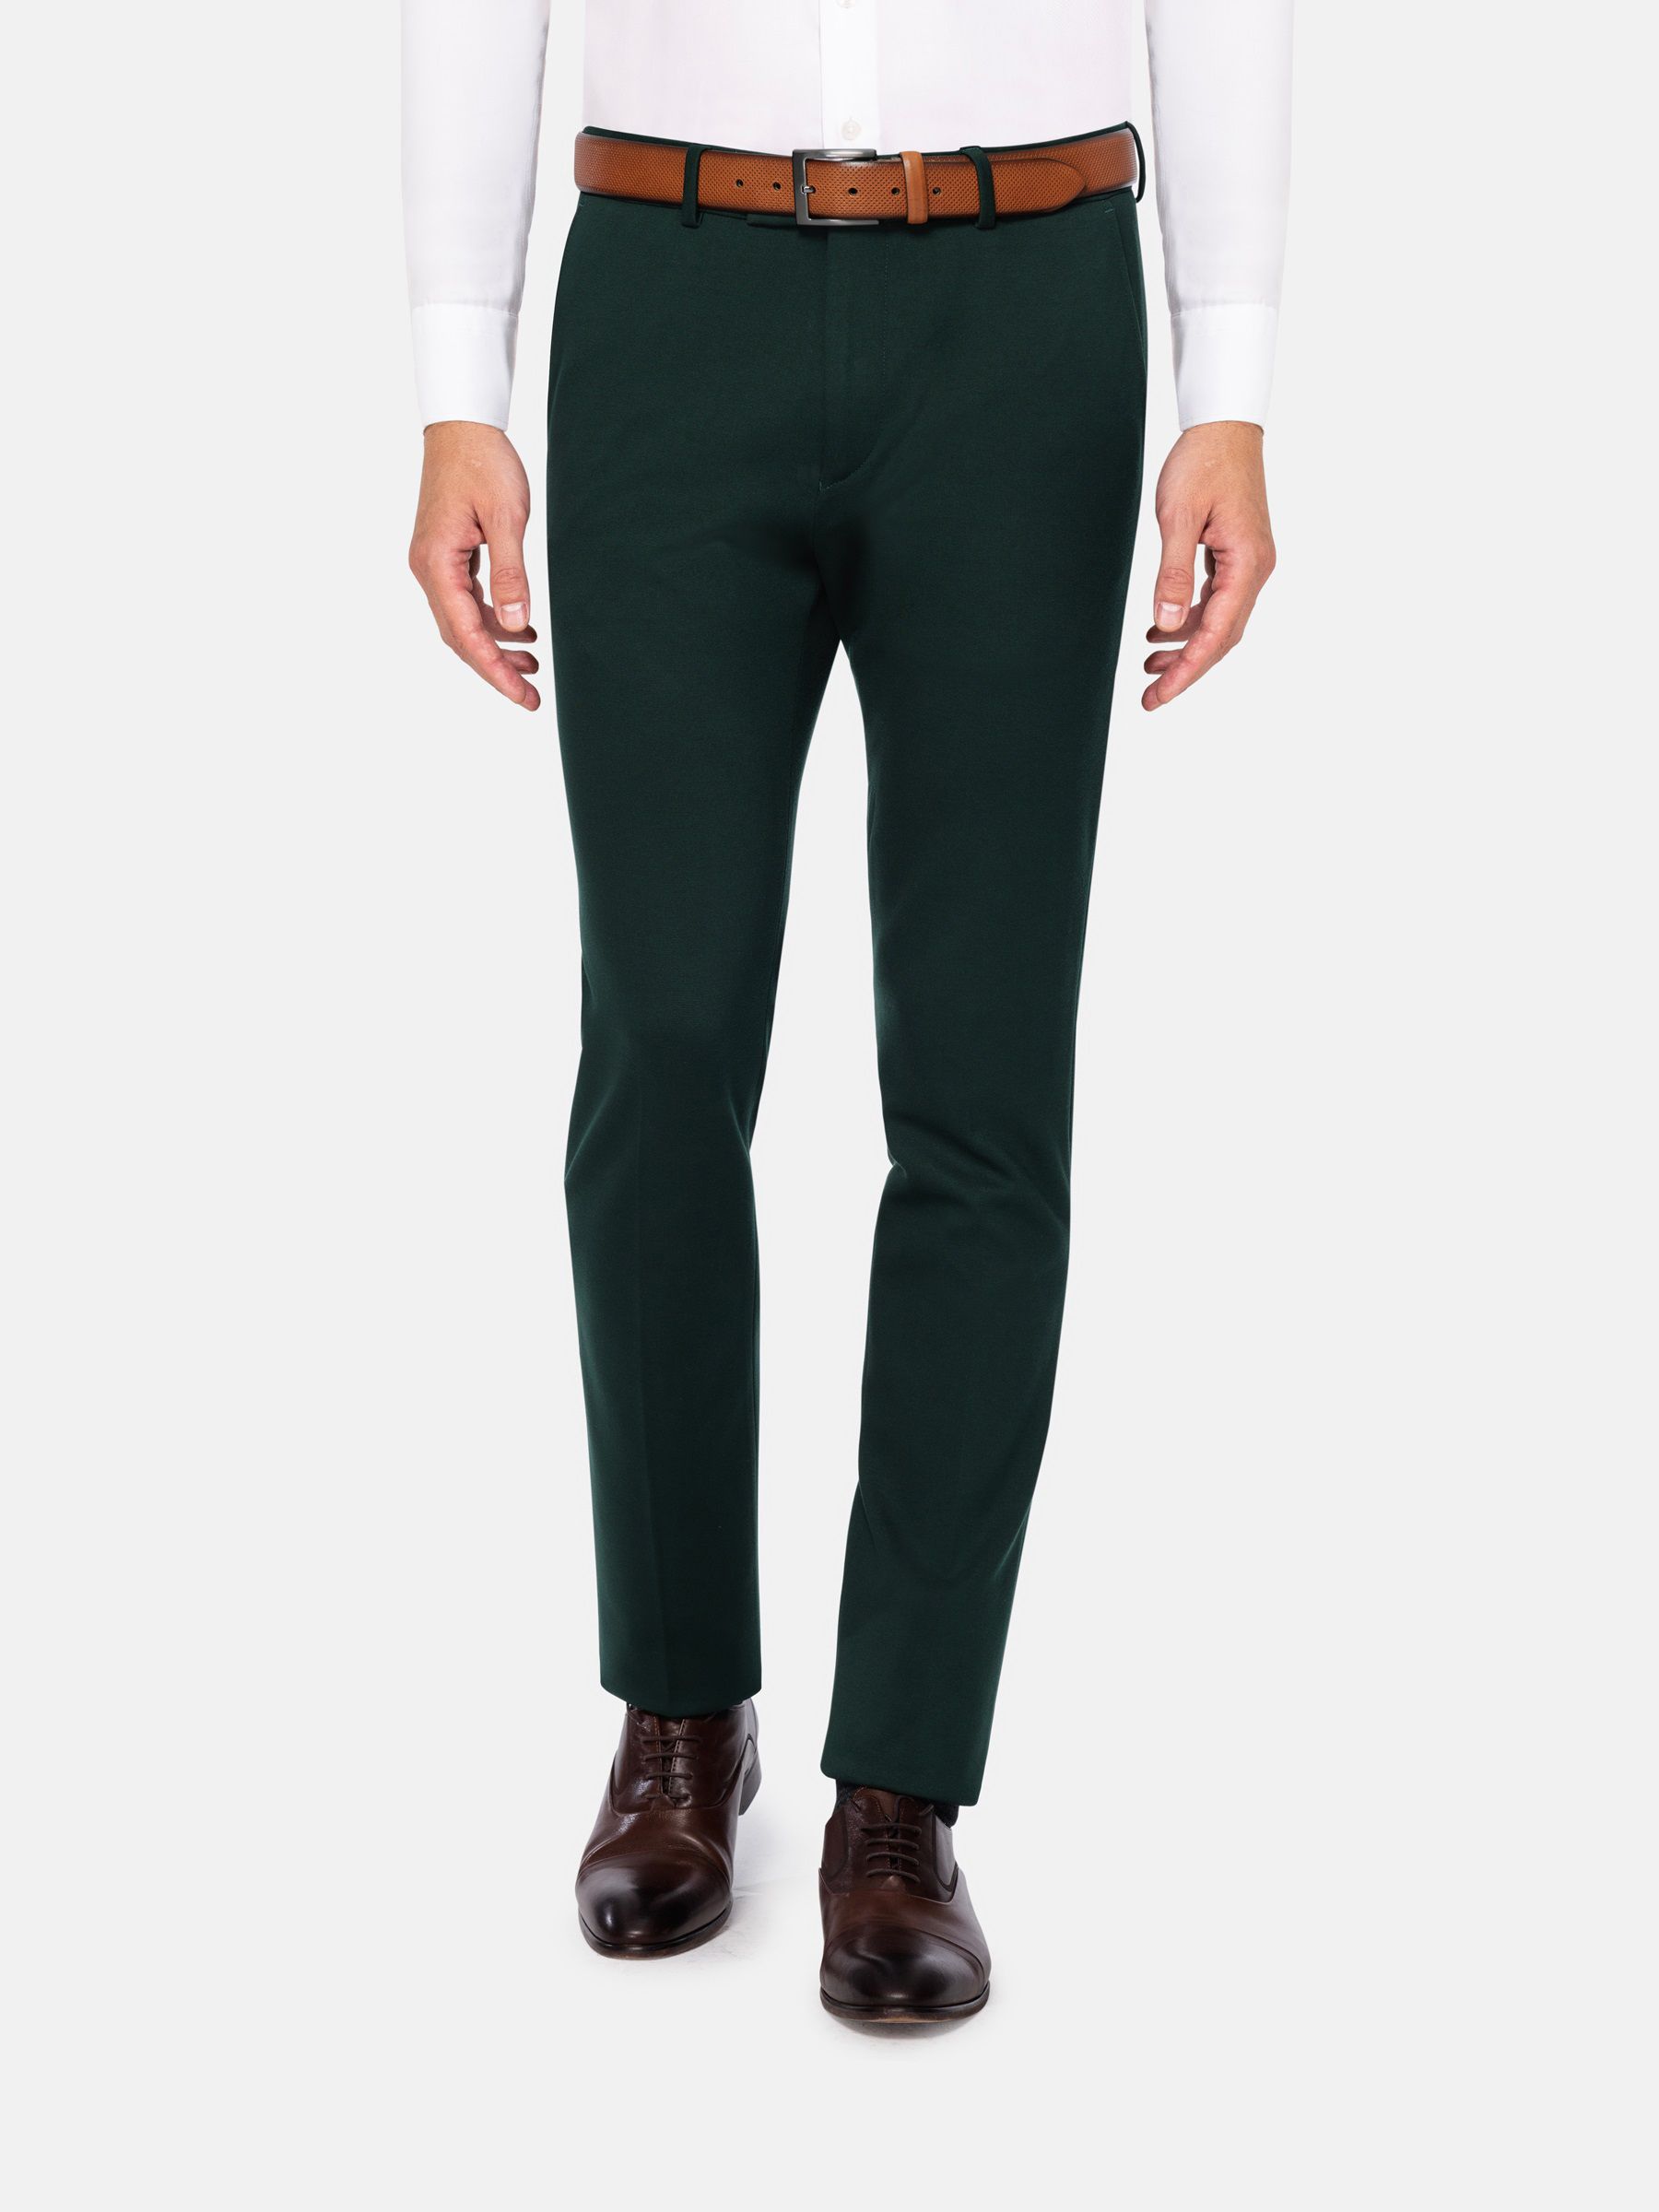 Glen Check Suit Pants - Slim Fit Green Suit Trousers - Stylish Glen Check  Pants | WAM DENIM